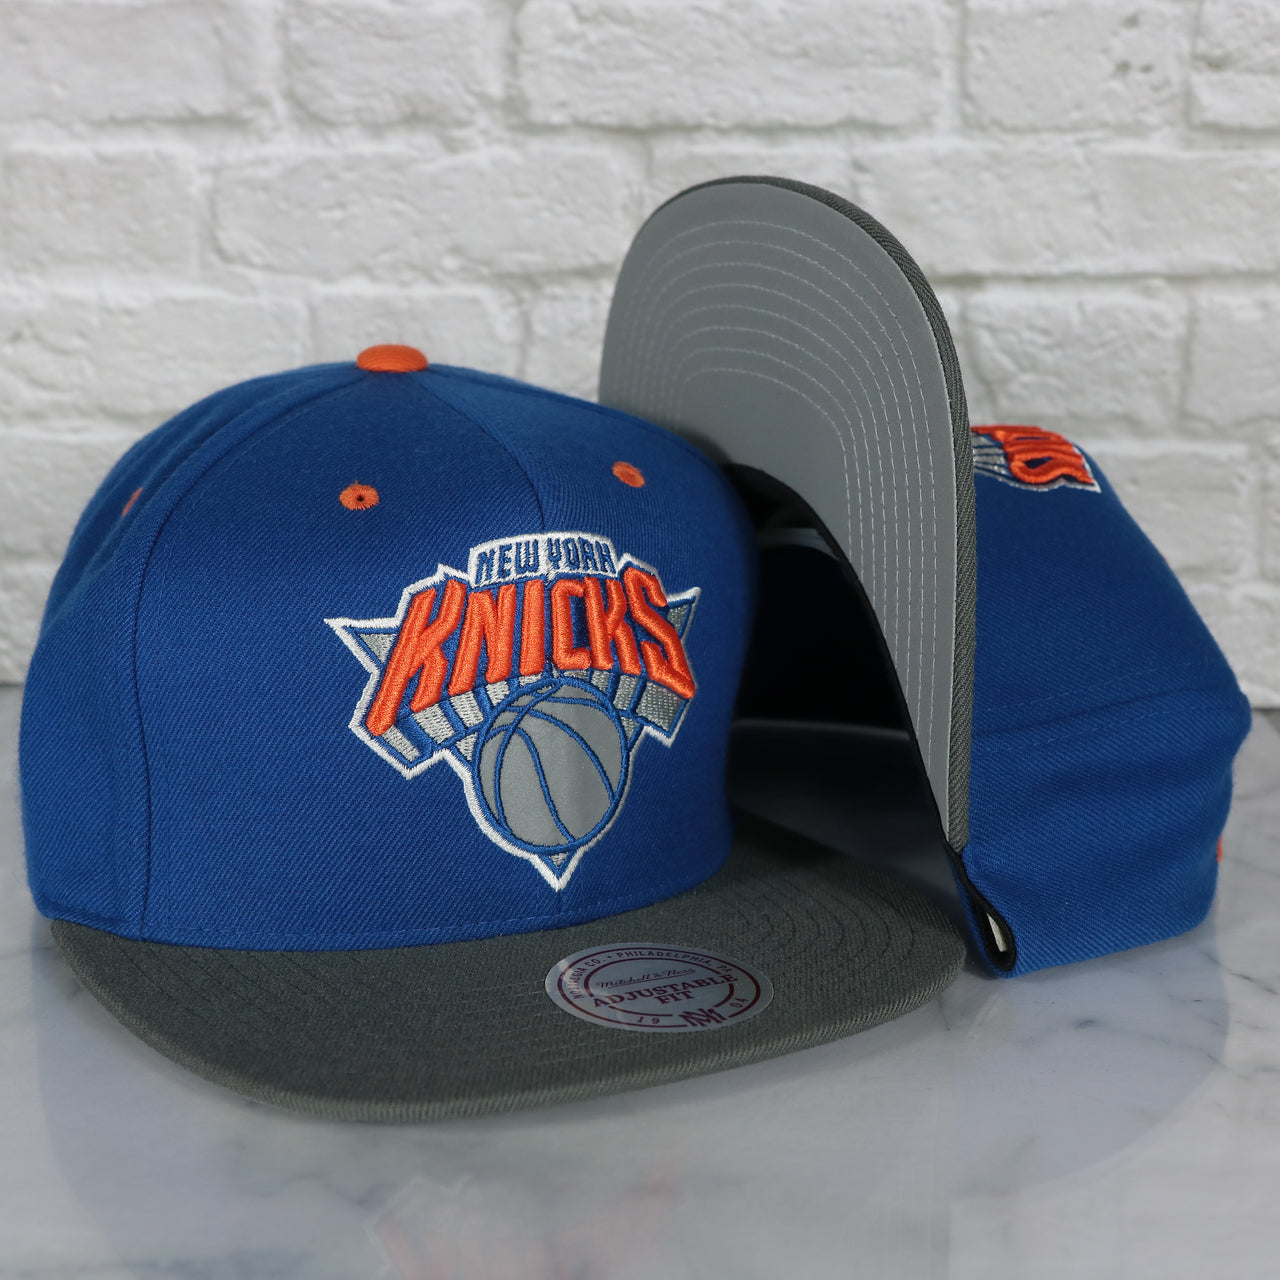 New York Knicks Snapback Hat | 3M Reflective Mitchell and Ness Vintage Knicks Snapback Cap